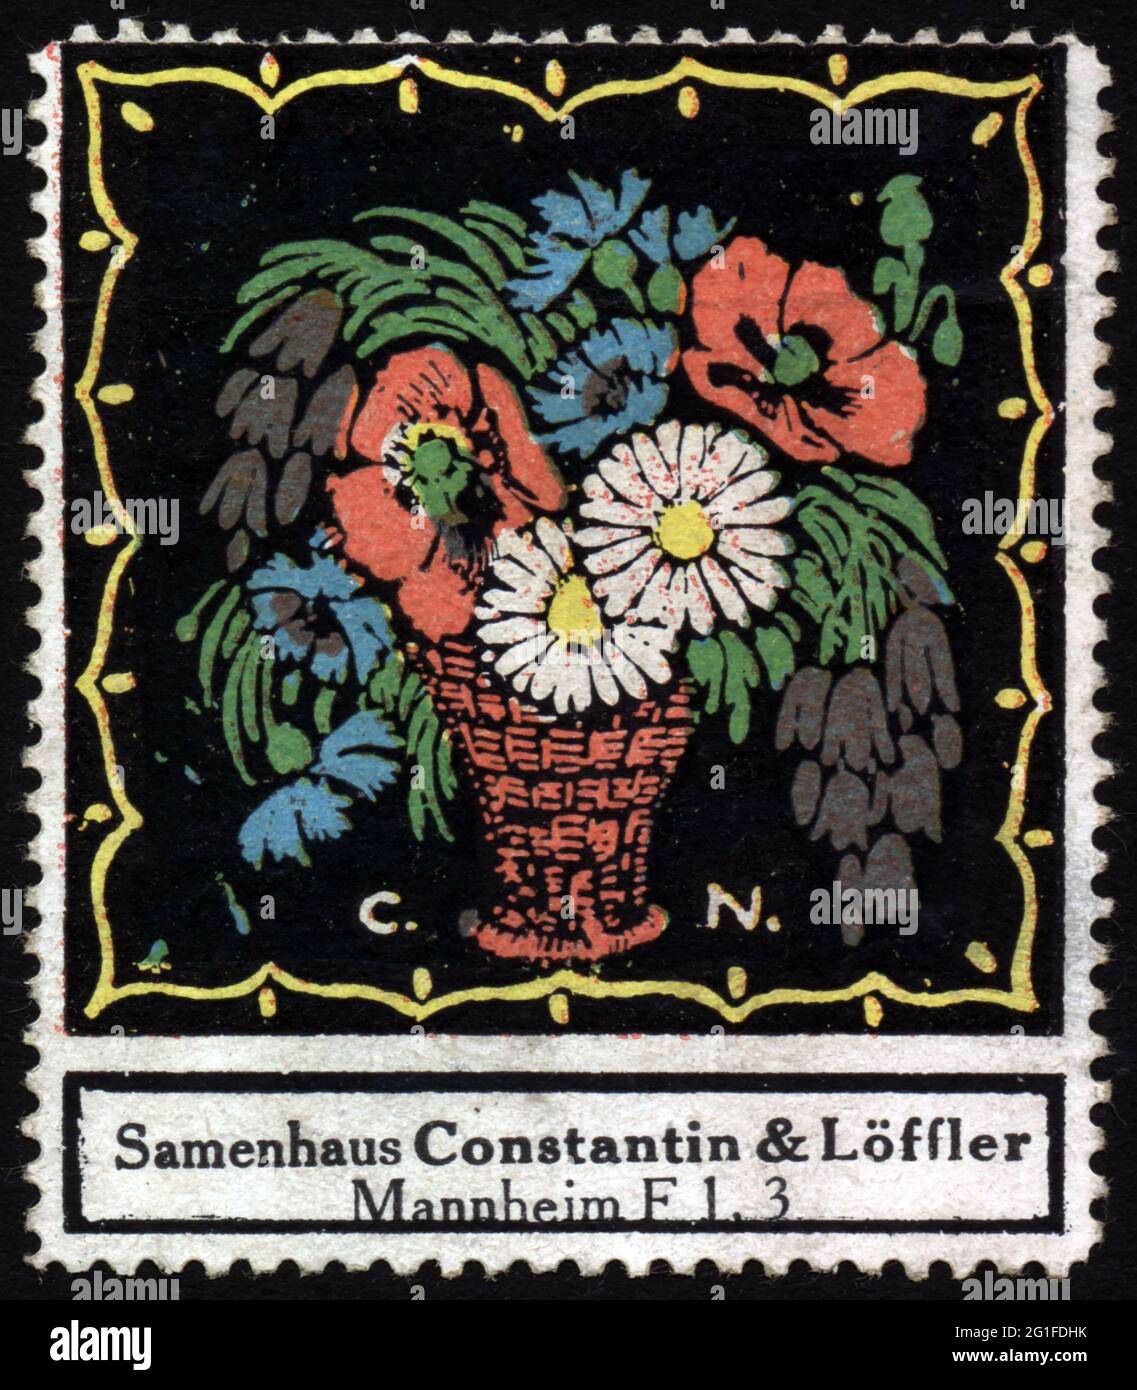 Werbung, Pflanze, Blumensamen, Samenhaus Constantin und Loeffler, Mannheim, Plakatstempel, um 1910, ARTIST's COPYRIGHT DARF NICHT GEKLERT WERDEN Stockfoto